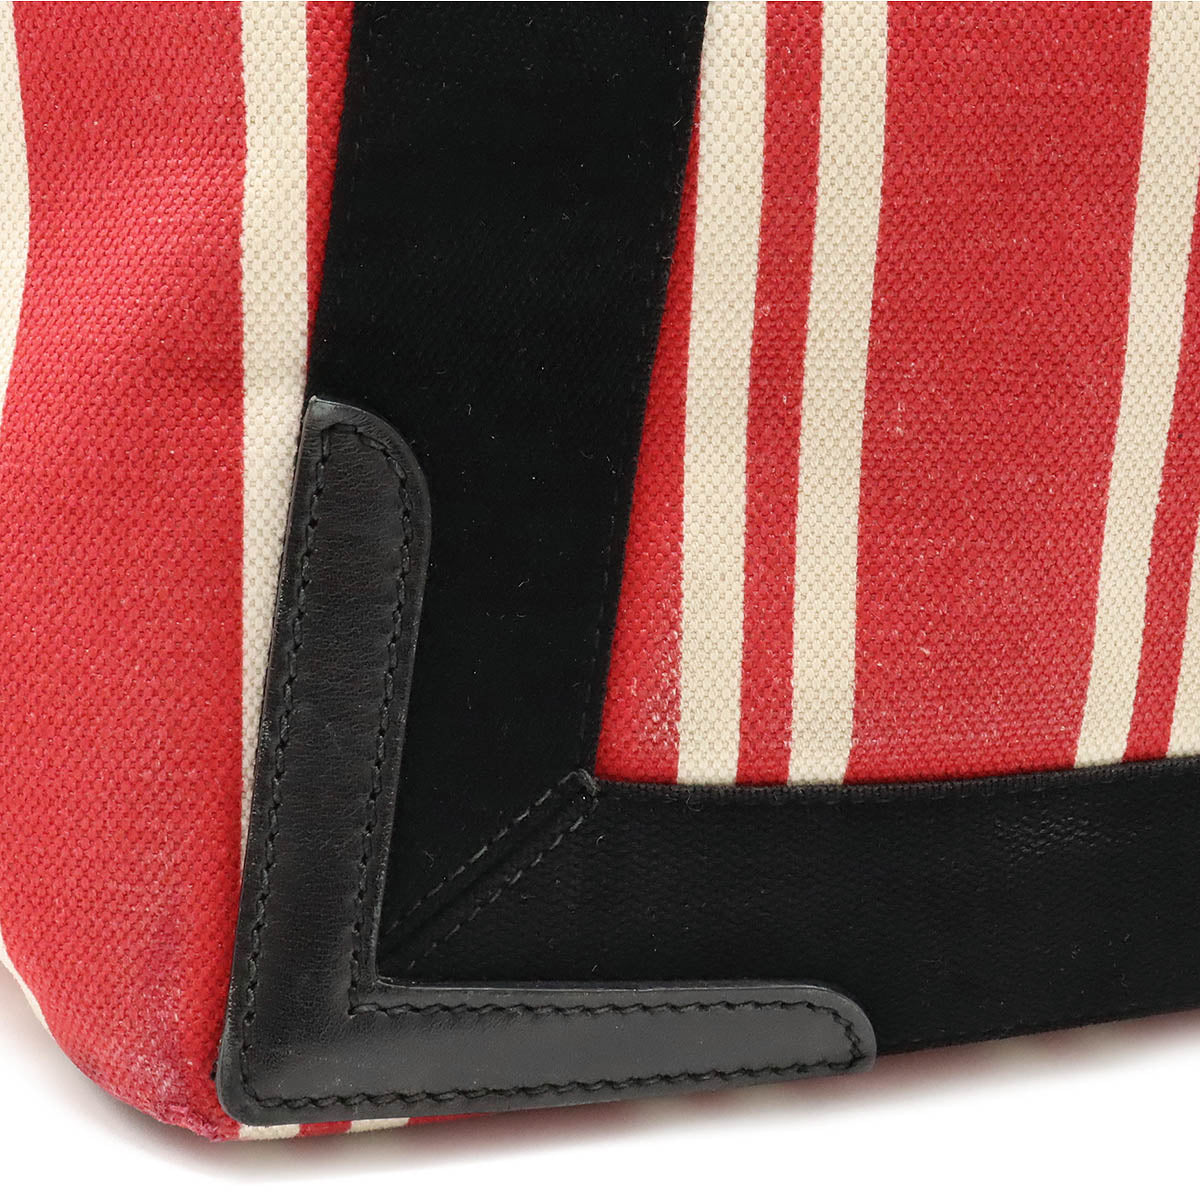 BALENCIAGA VALENCIAGA Navy Caba S Strip Tote Bag Handbag Canvas Leather Red Black  Pouch 339933